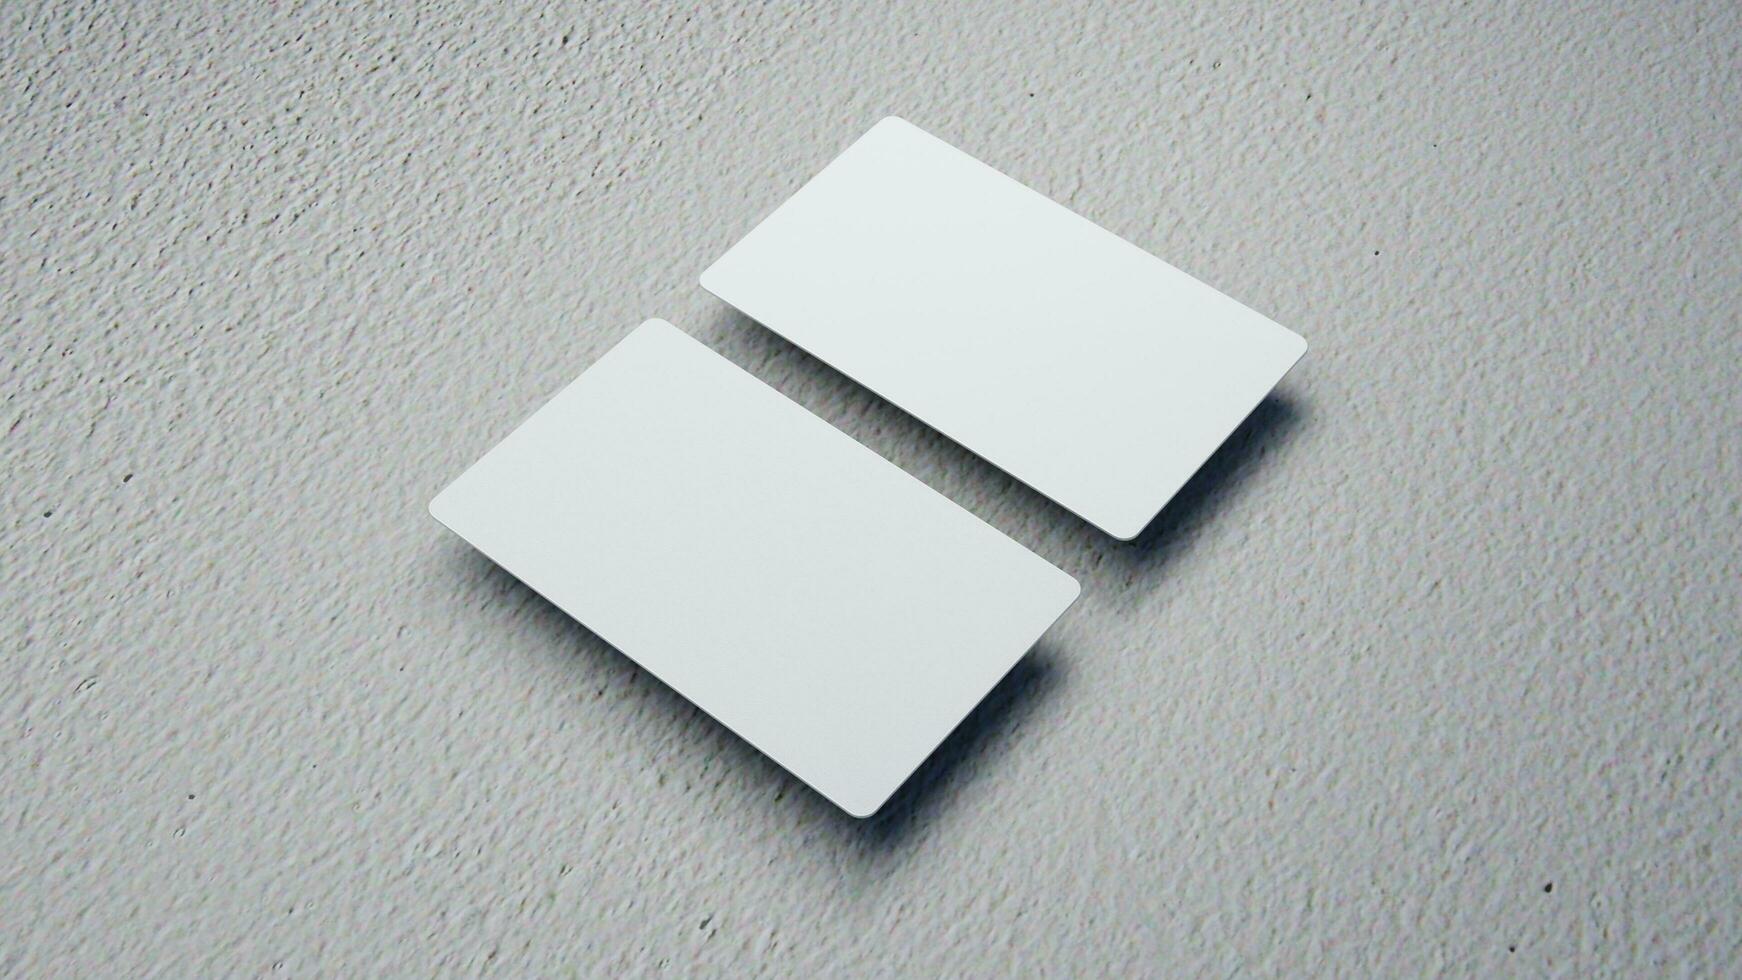 3d prestados negocio tarjeta burlarse de arriba con frente y atrás. vacío Bosquejo para presentación en aislado ligero gris antecedentes foto